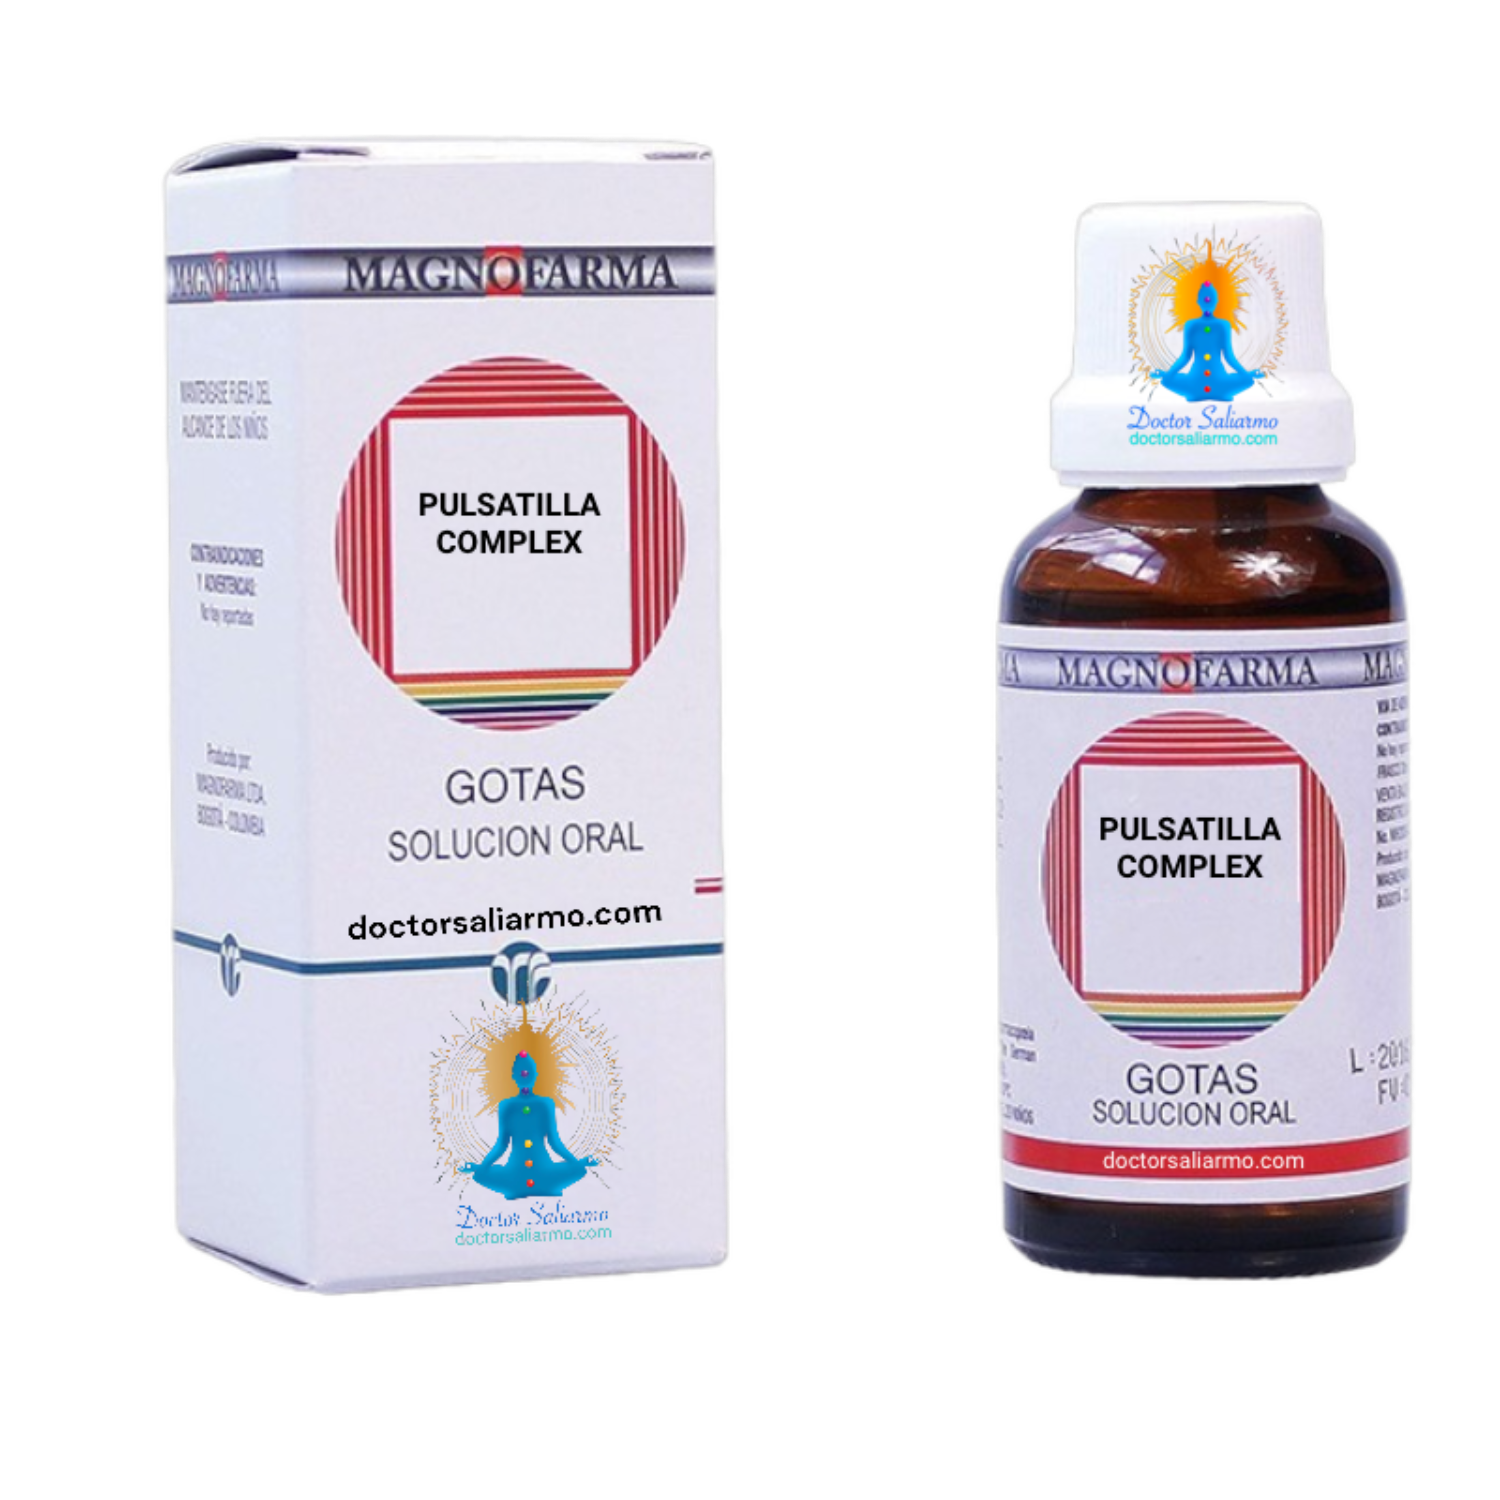 pulsatilla medicamento homeopático usada en afecciones respiratorias, digestivas, ginecológicas, del sistema venoso y también en enfermedades depresivas